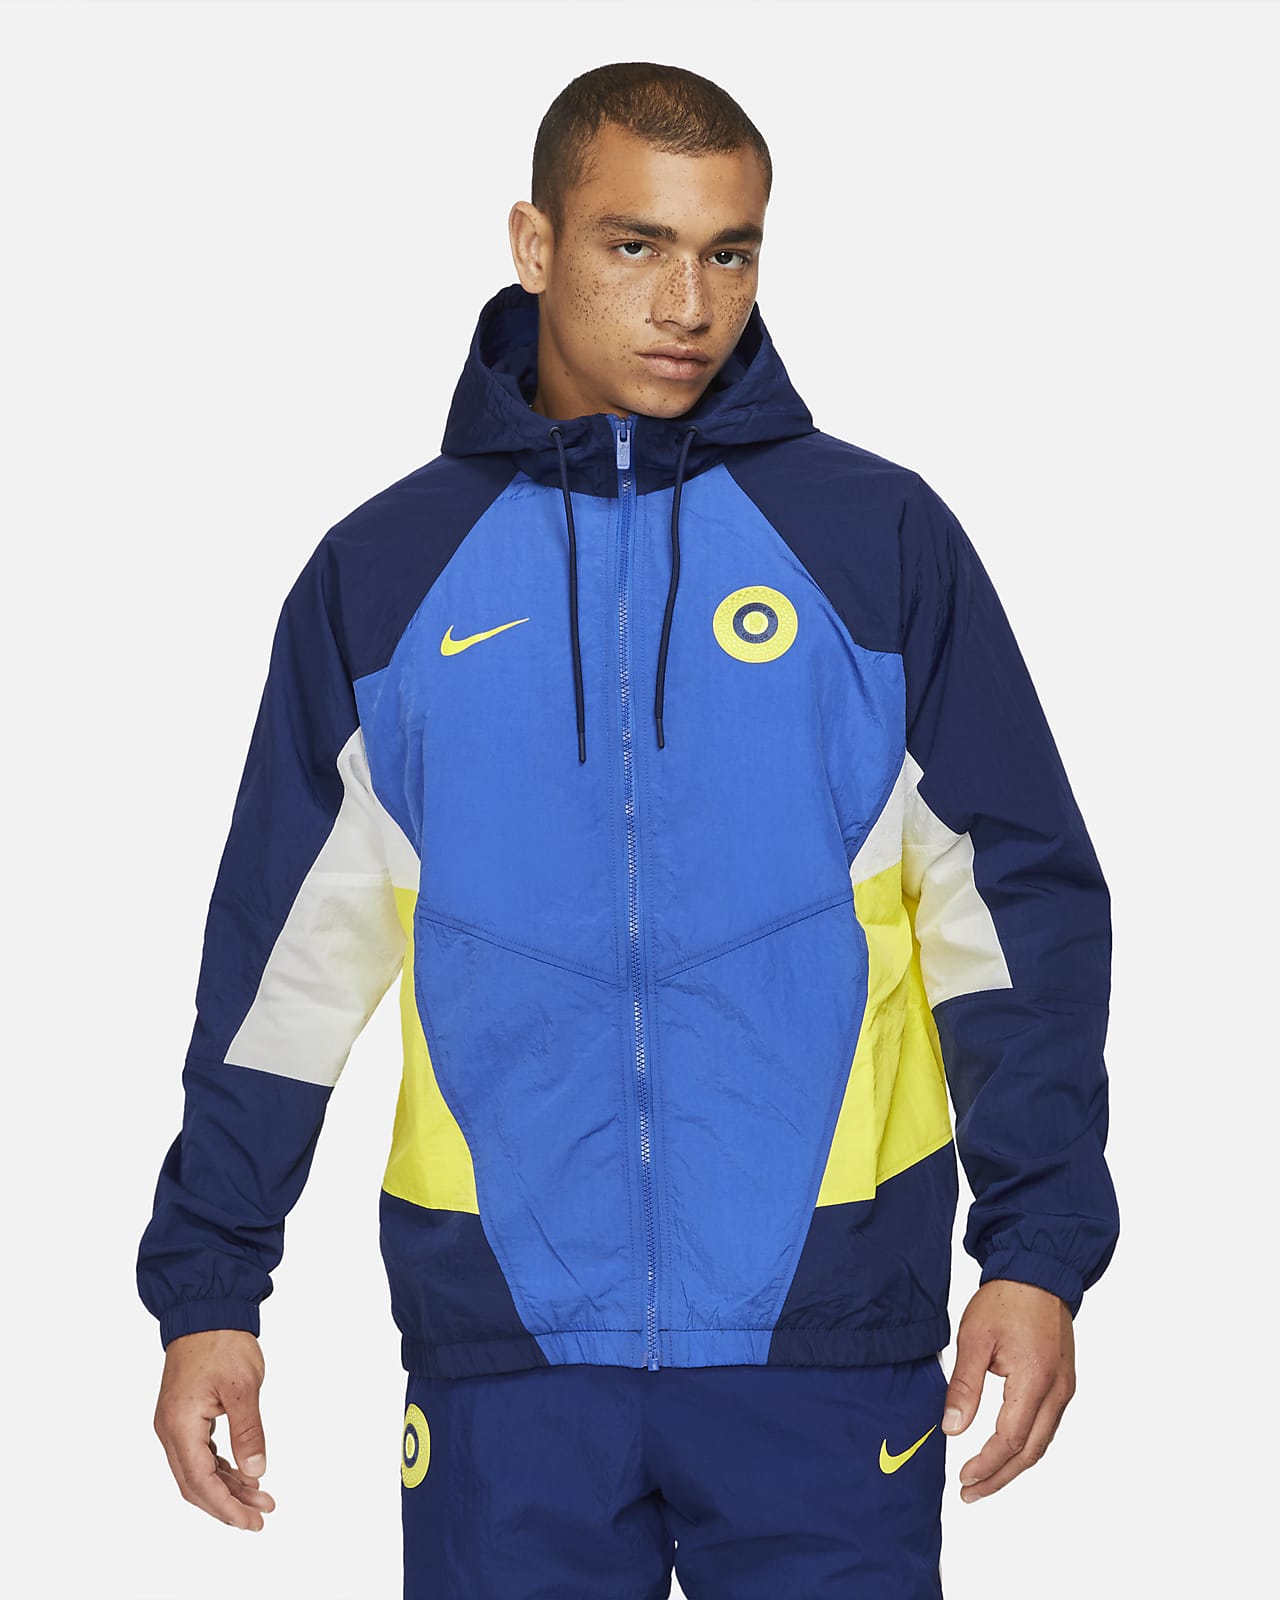 Verraad Immuniseren Informeer Chelsea FC Windrunner Men's Woven Soccer Jacket. Nike.com